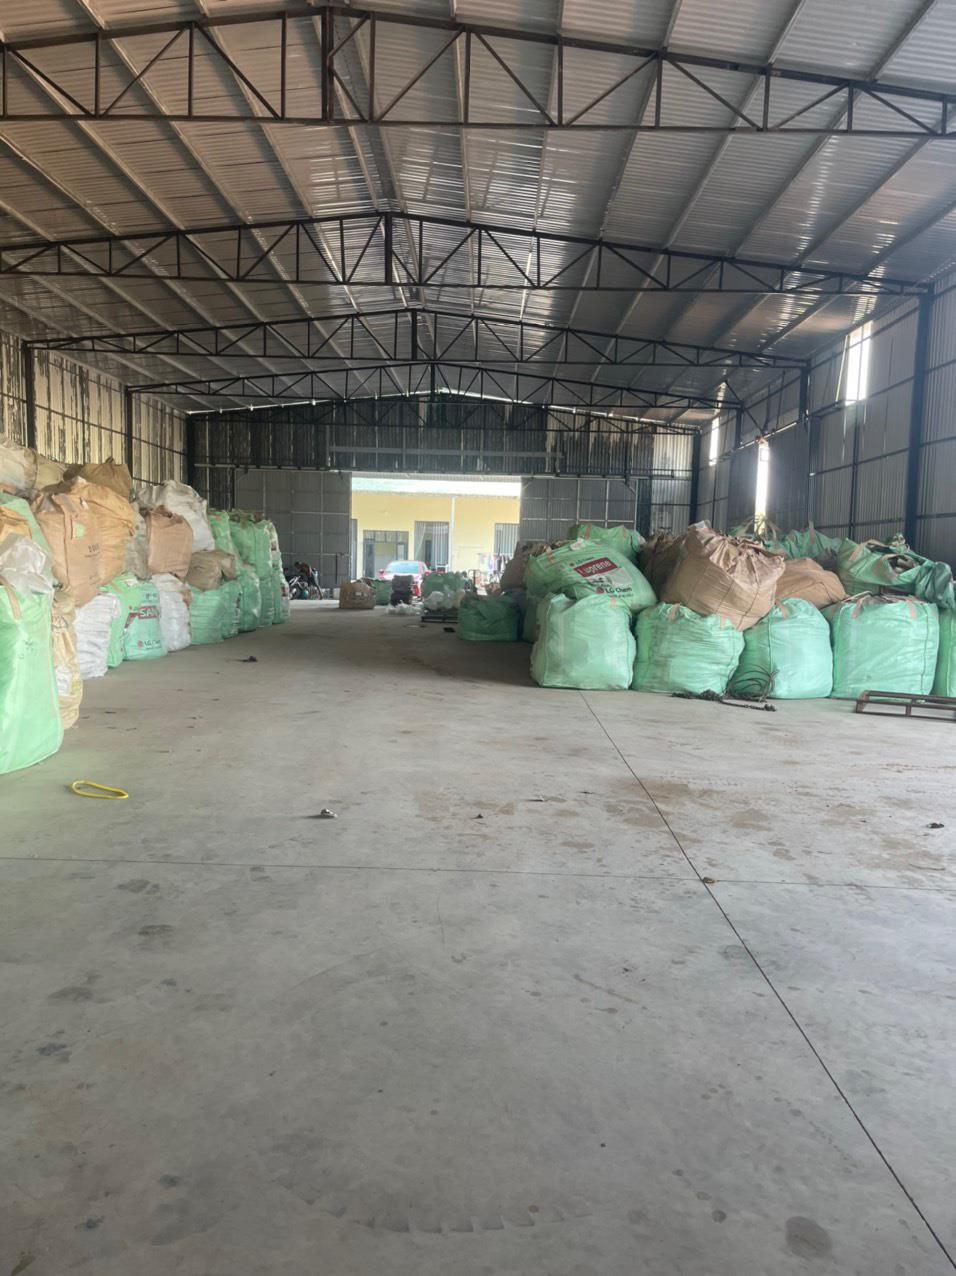 Bán kho xường Phú Giáo BD, sản xuất nhựa đang hoạt động1505496